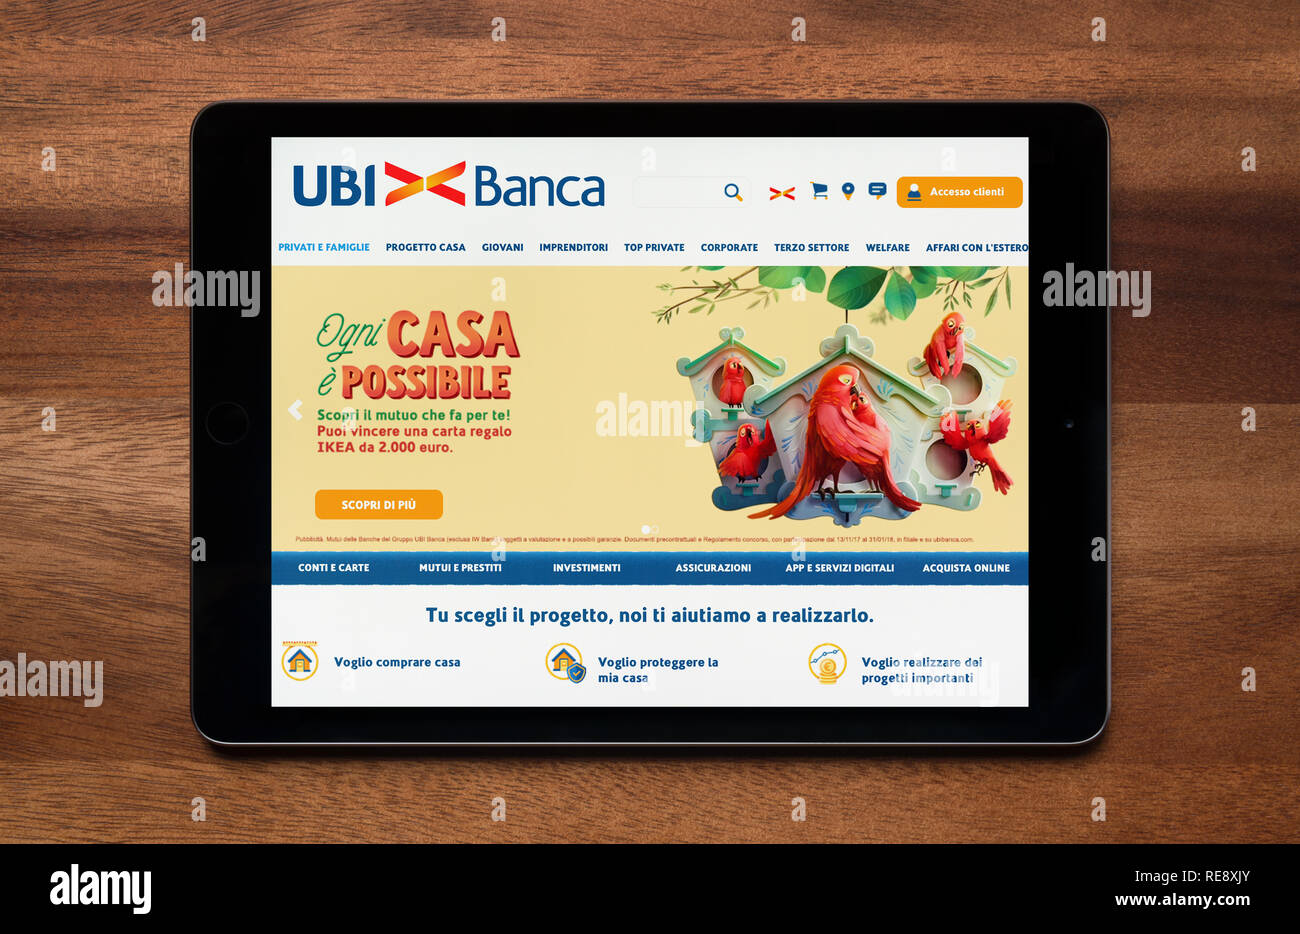 El sitio web de Uni Banca es visto en un iPad, que descansa sobre una mesa de madera (uso Editorial solamente). Foto de stock